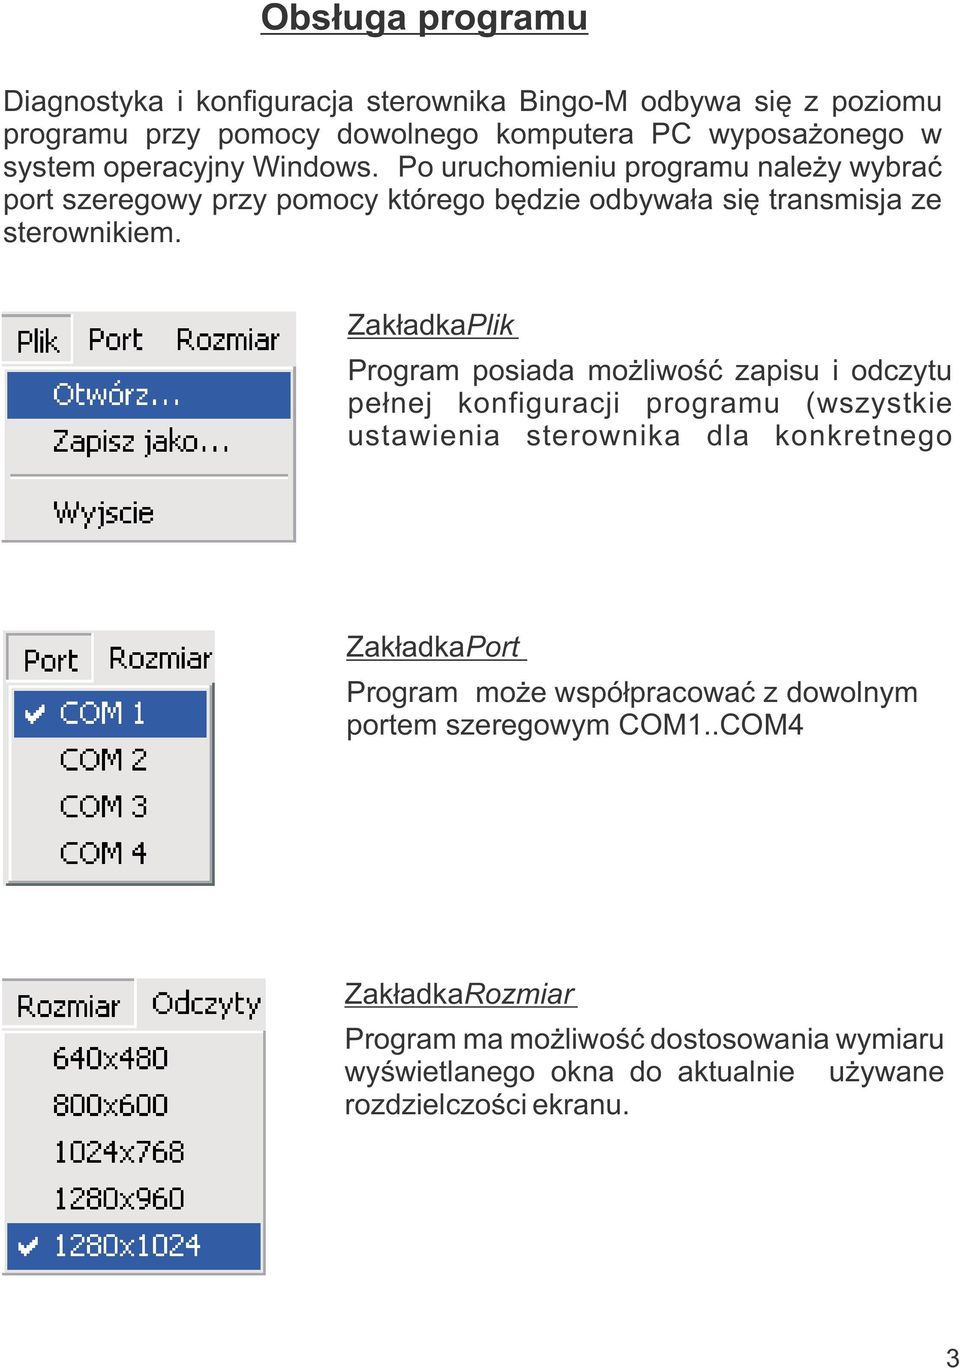 ZakładkaPlik Program posiada możliwość zapisu i odczytu pełnej konfiguracji programu (wszystkie ustawienia sterownika dla konkretnego ZakładkaPort Program